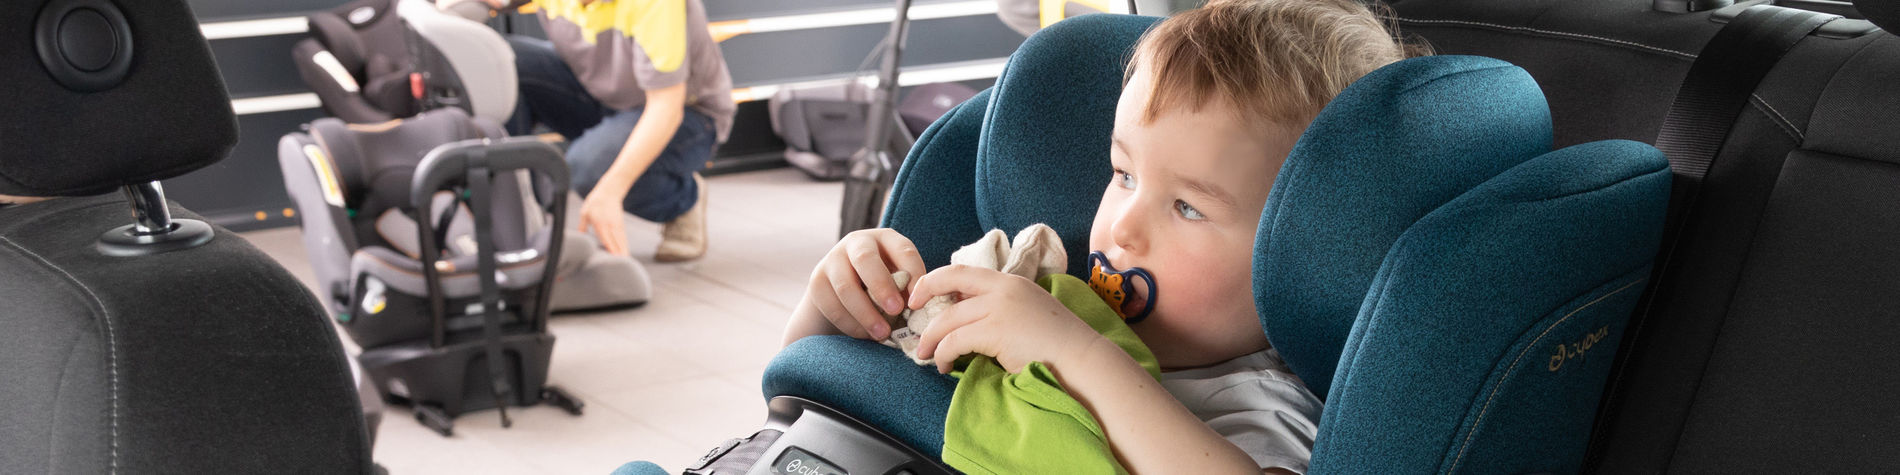 Kindersitz Norm: Der richtige Sitz für jedes Kind - TCS Schweiz